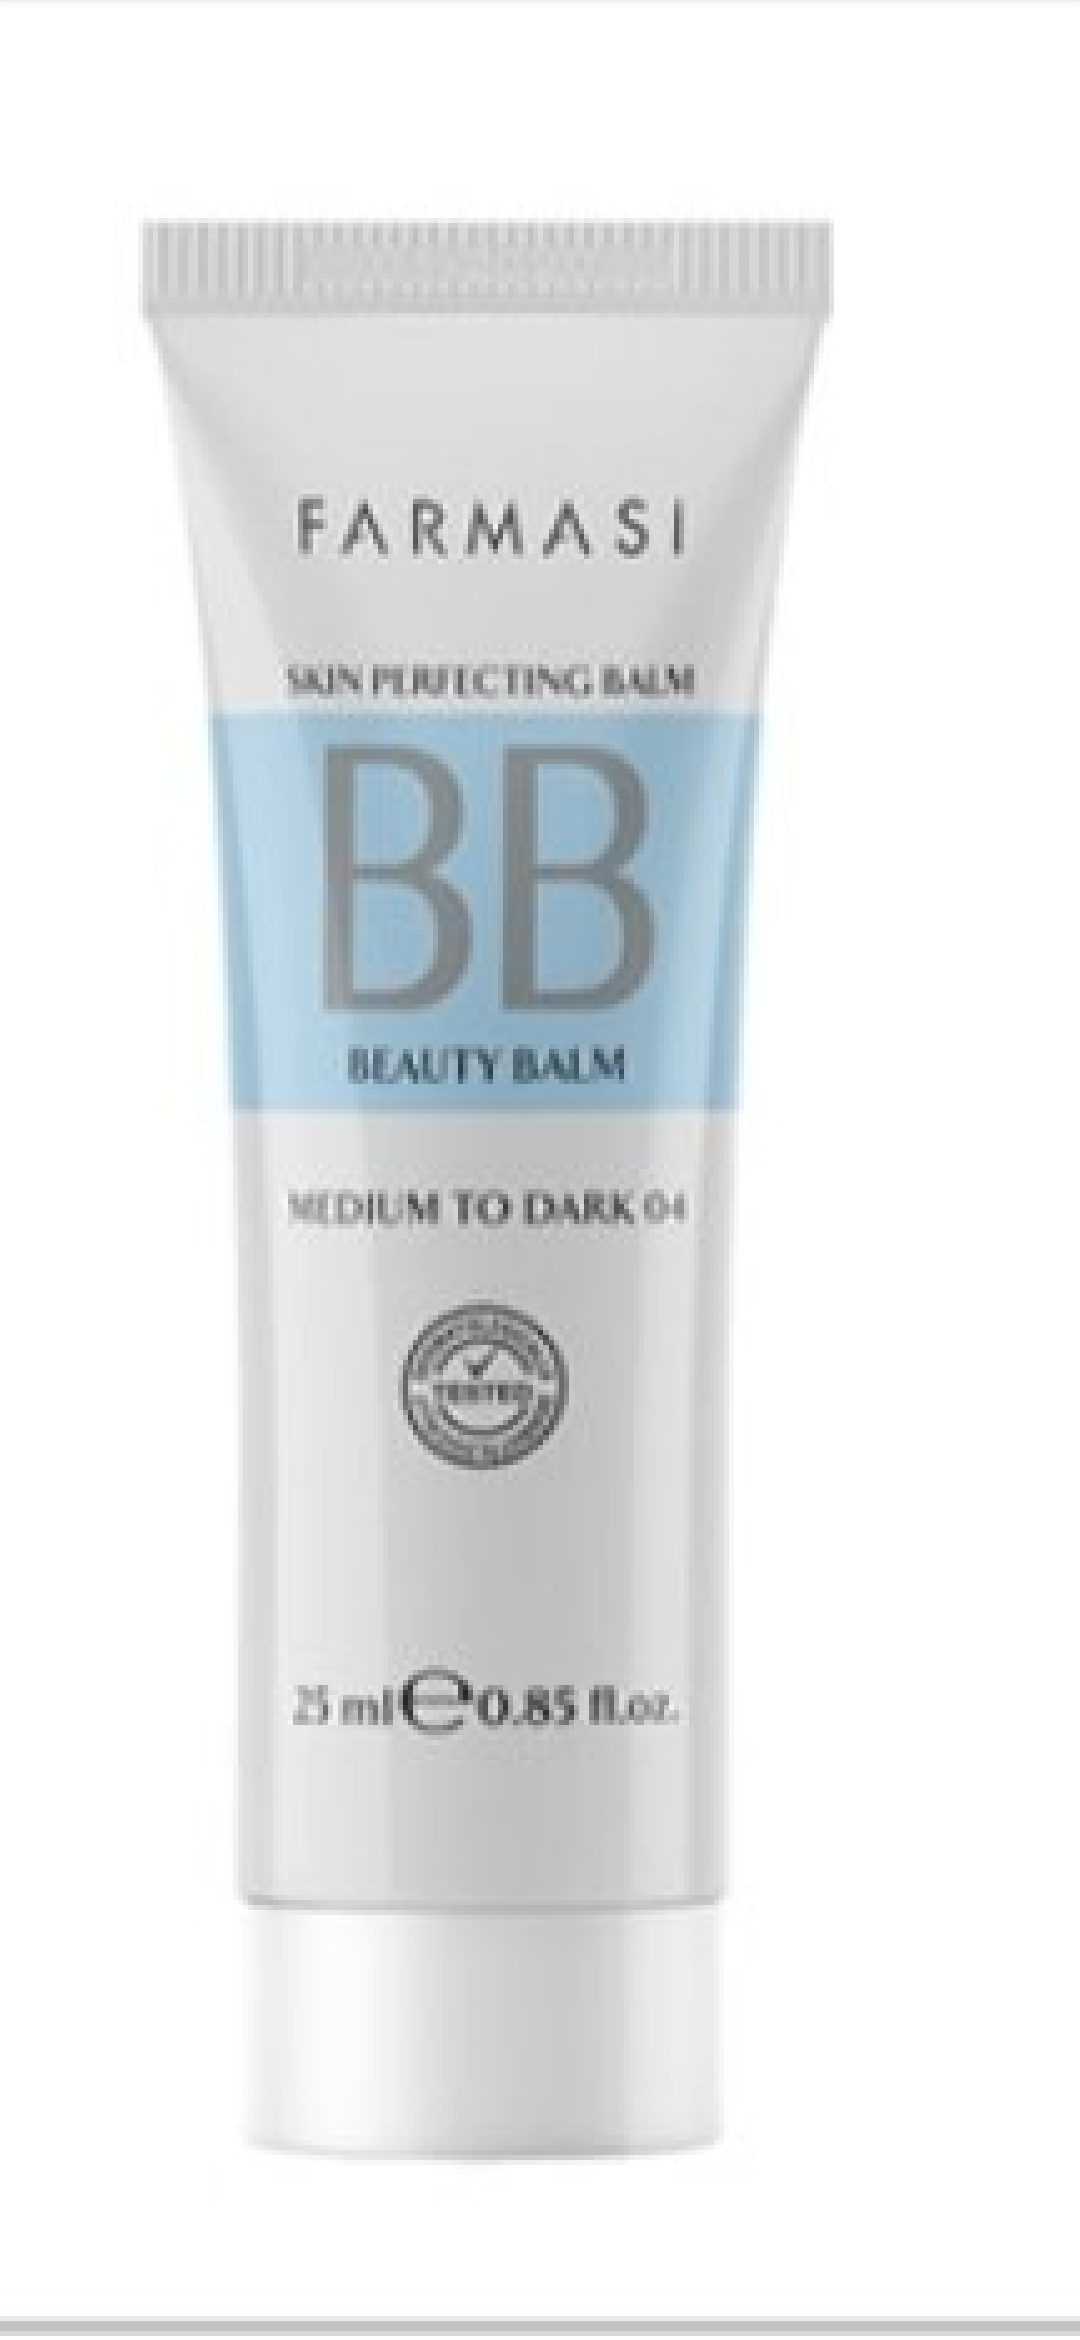 Farmasi BB Skin Perfecting Balm Medium To Dark 04 25 ML